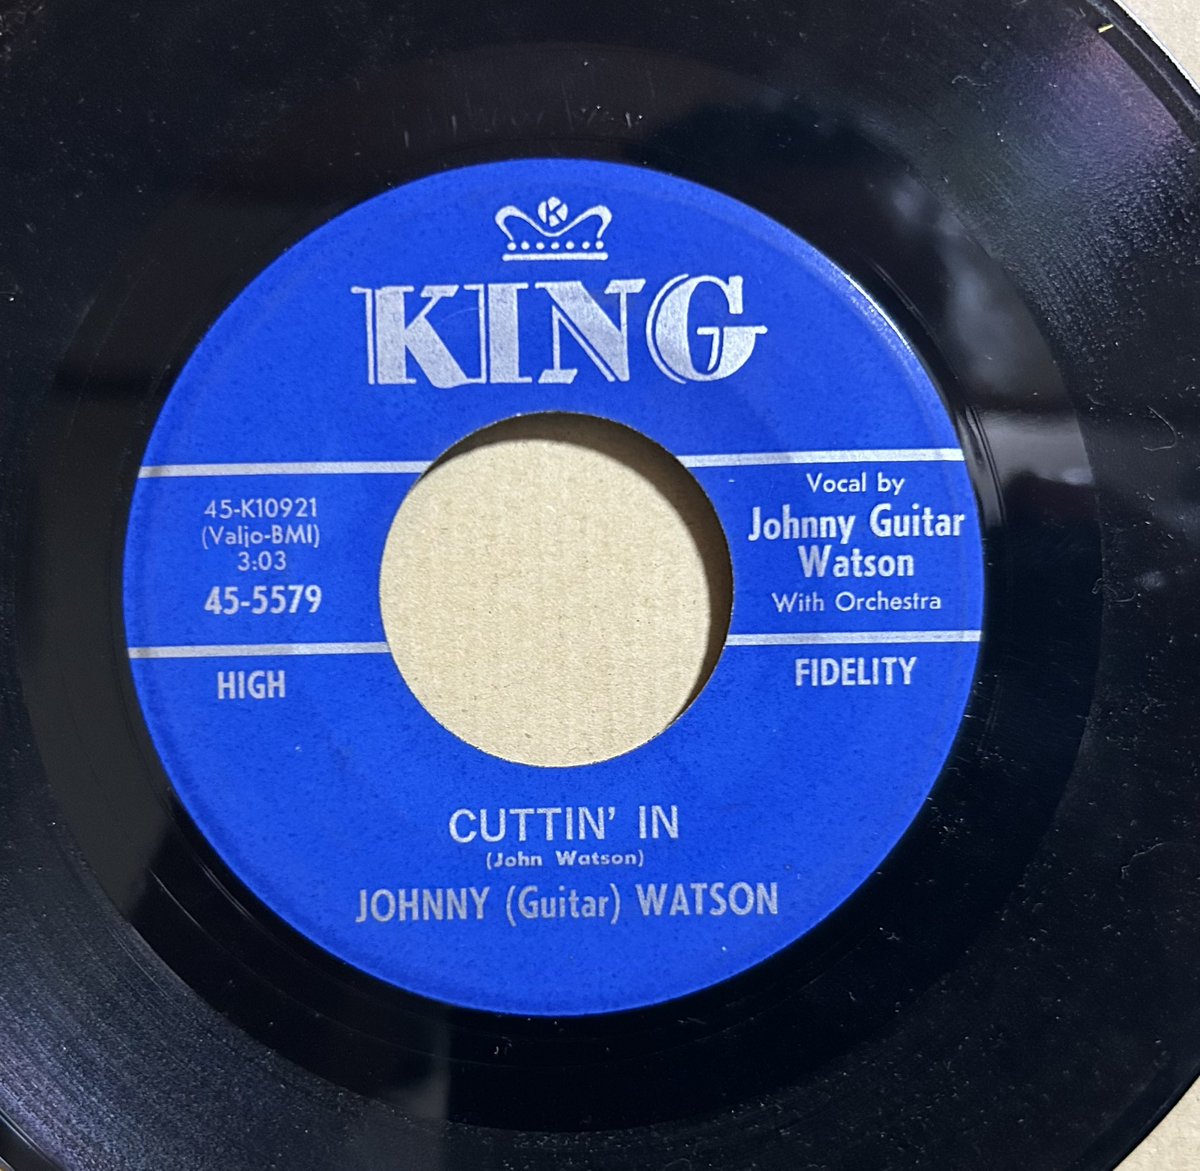 今日の1曲！
Johnny'Guitar'Watson,
Cuttin' In.
youtube.com/watch?v=AbCh0s…
#rhythmandblues 
#kingrecords
#johnnyguitarwatson